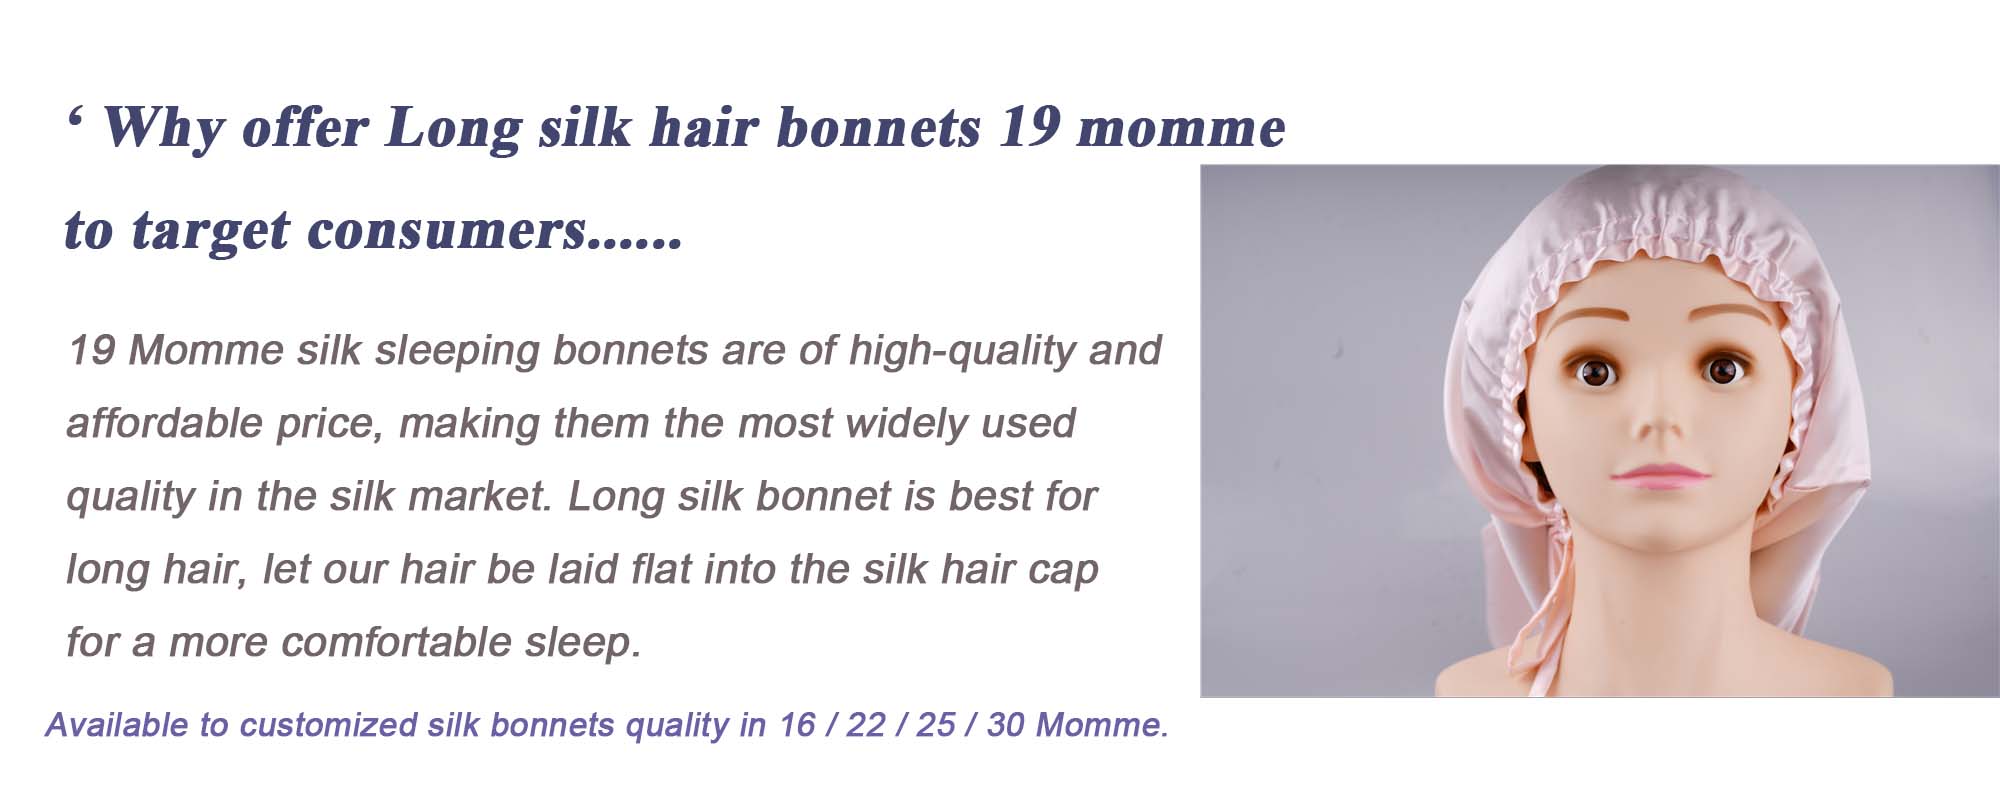 long silk hair bonnet